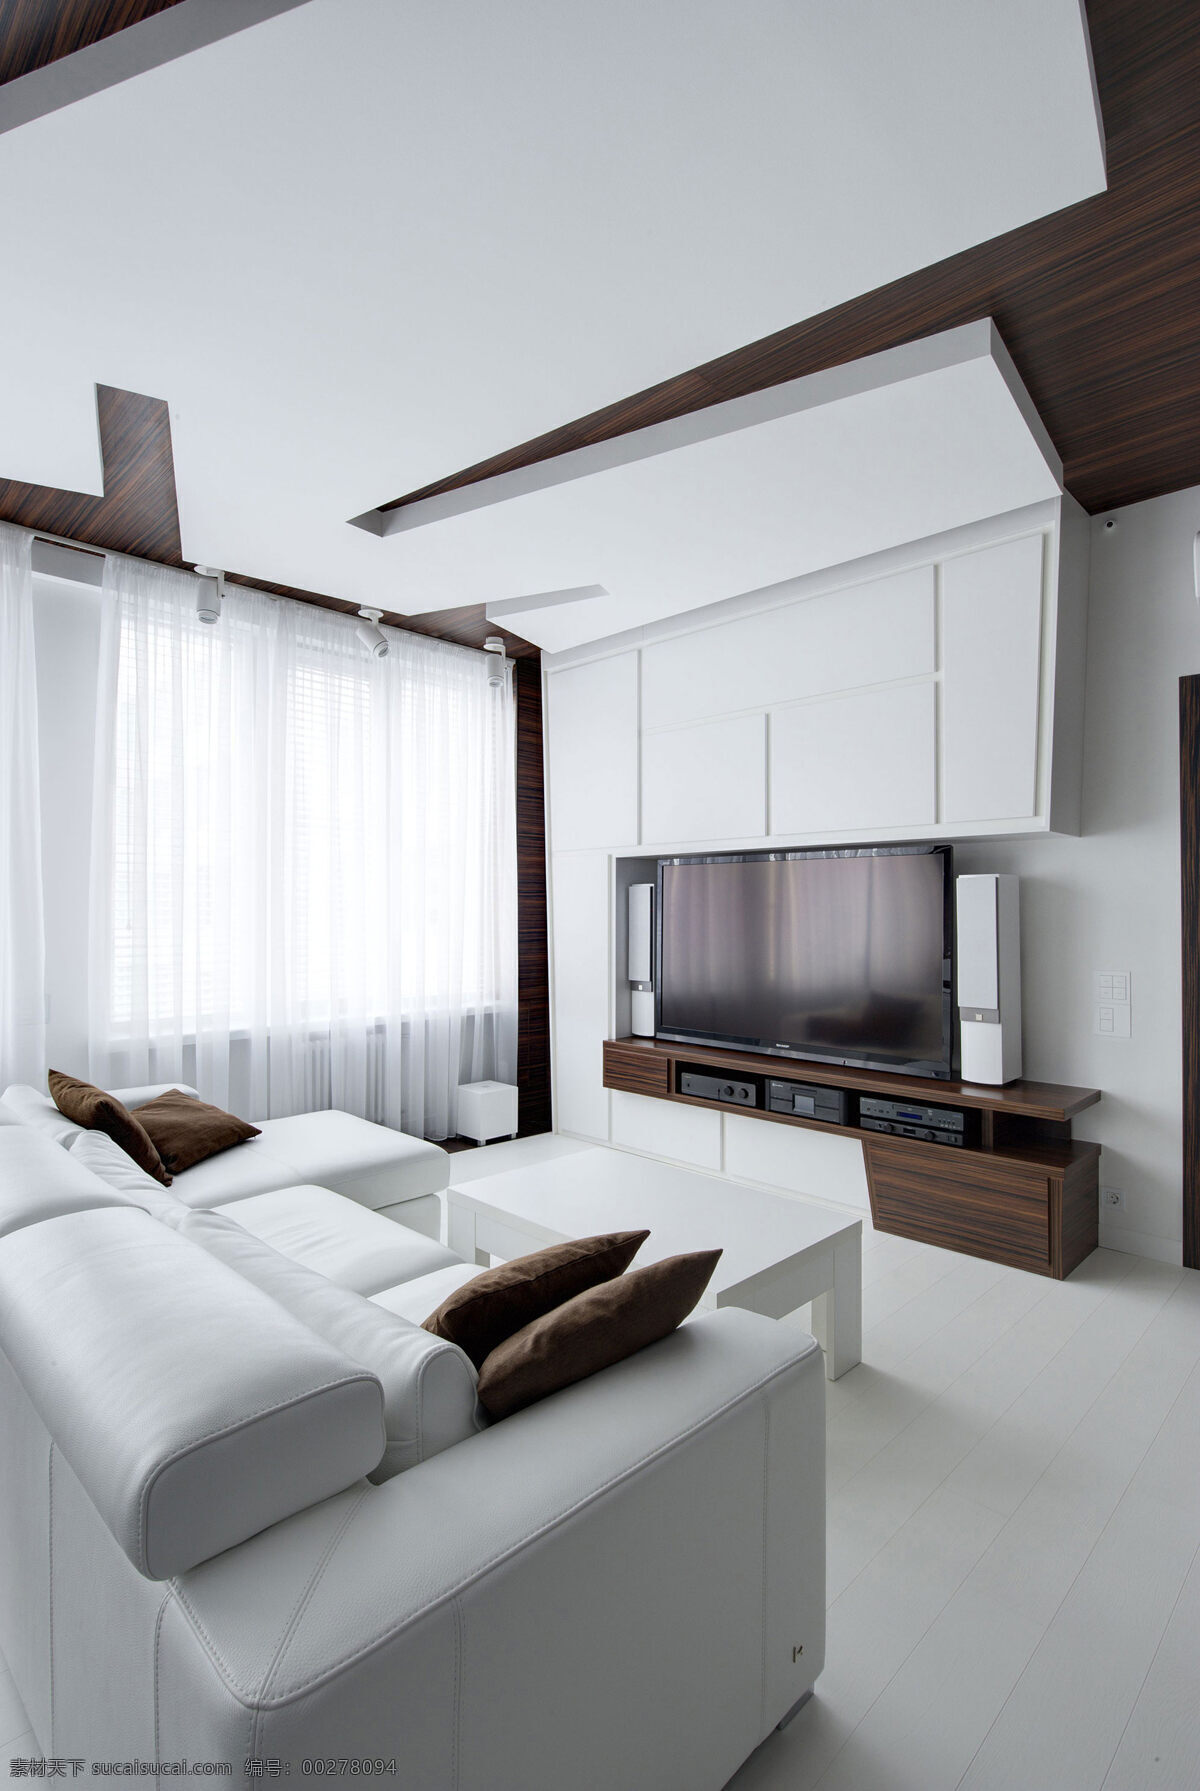 现代 高雅 客厅 褐色 木制 电视柜 室内装修 效果图 客厅装修 白色地板 白色茶几 白色背景墙